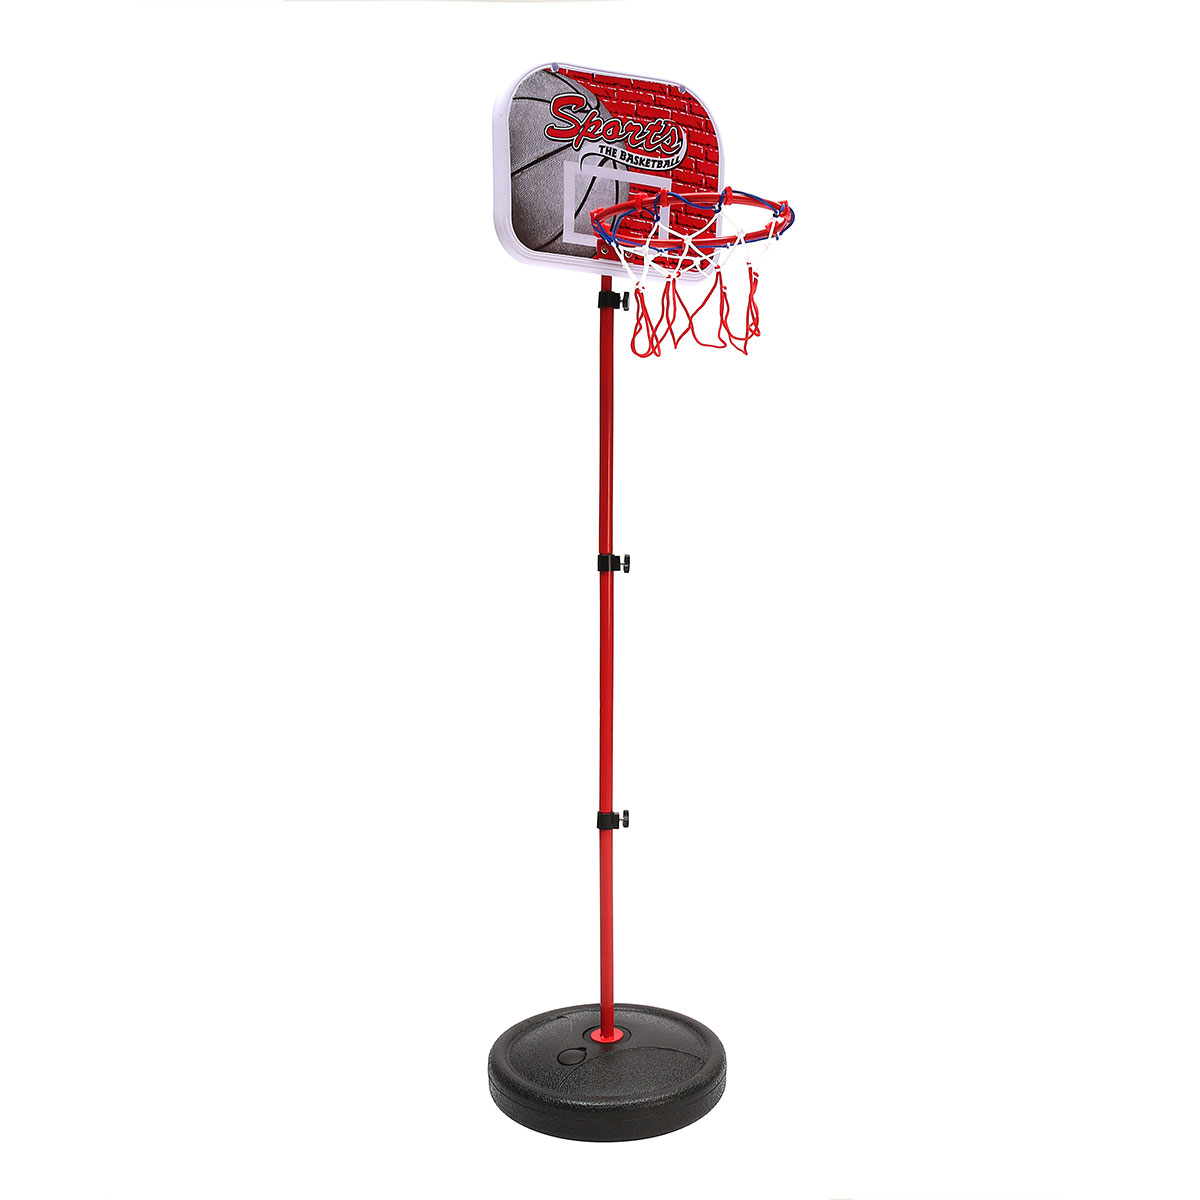 55cm-150cm-Mini-Adjustable-Portable-Basketball-Hoop-Net-Pump-Outdoor-Indoor-Stand-1455700